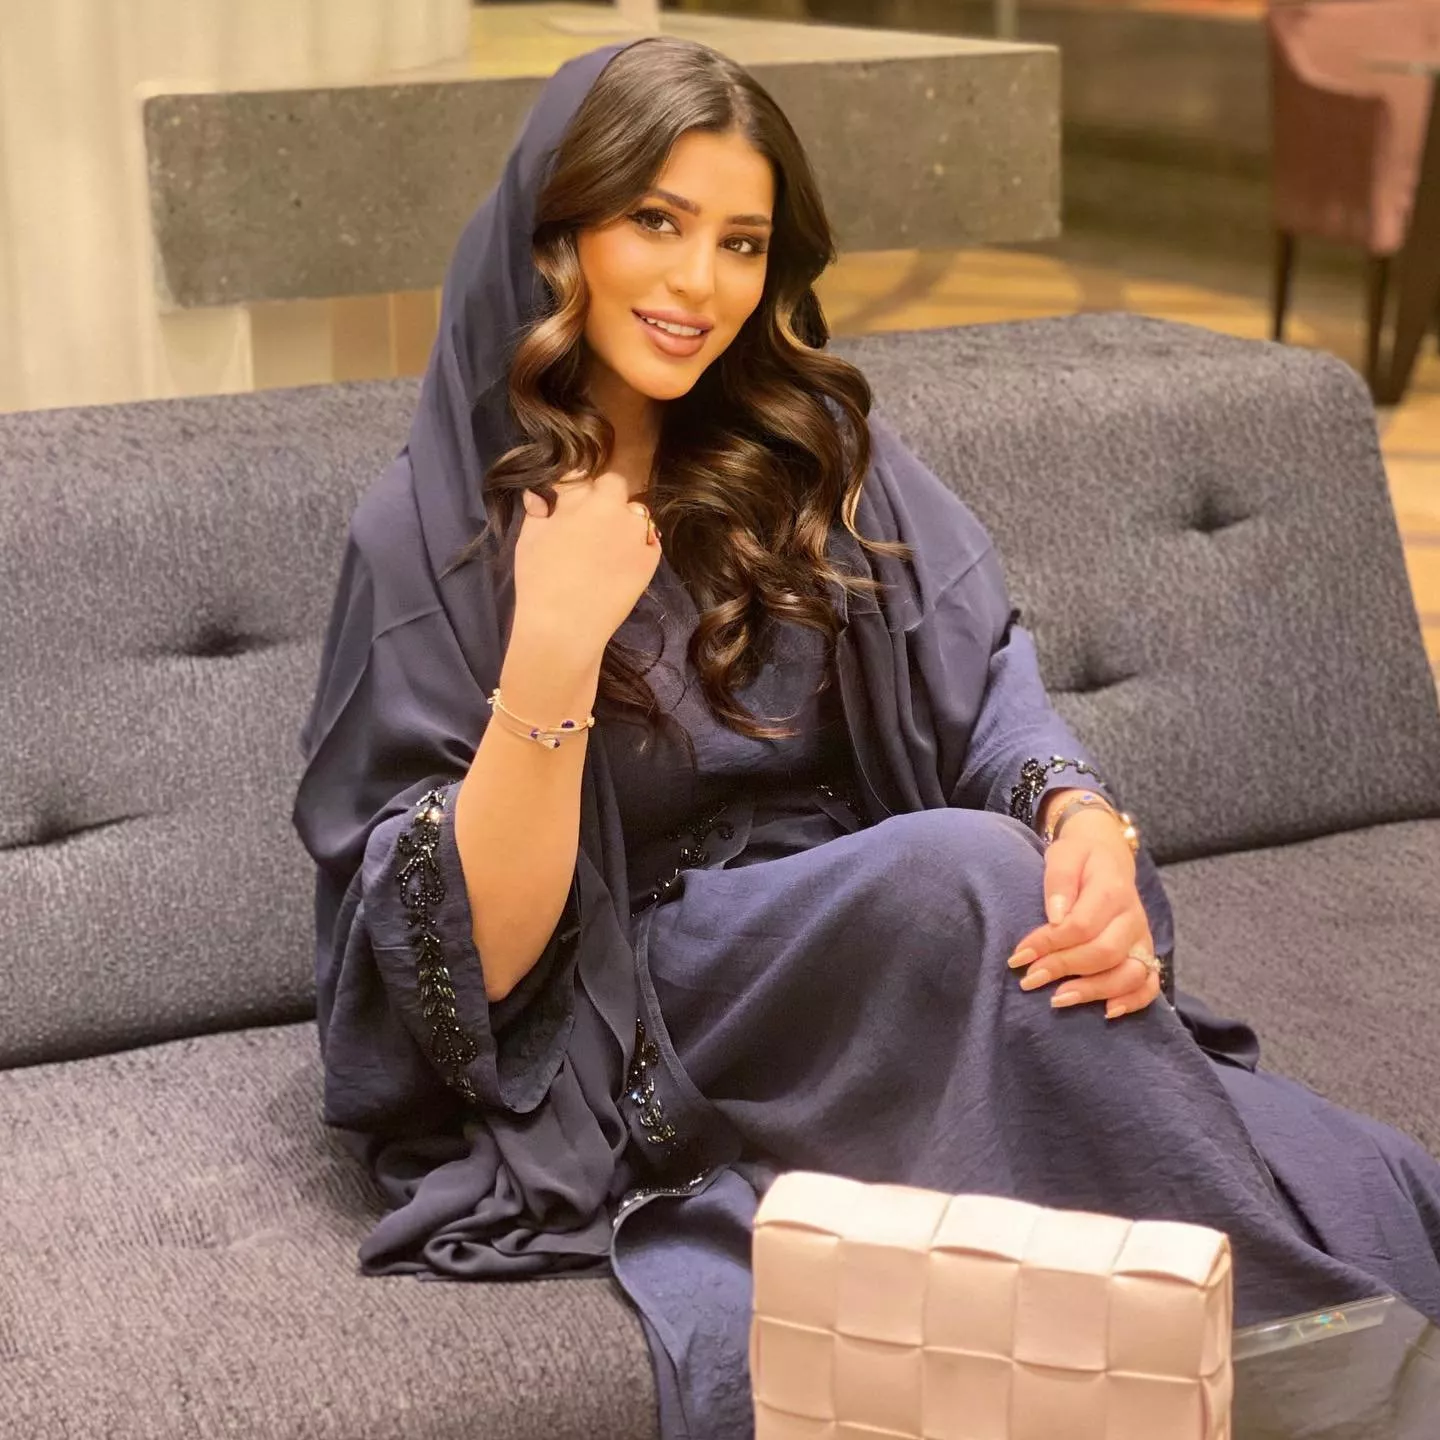 من هي صمود الكندري؟ إليكِ أبرز المعلومات عن الممثلة الكويتية